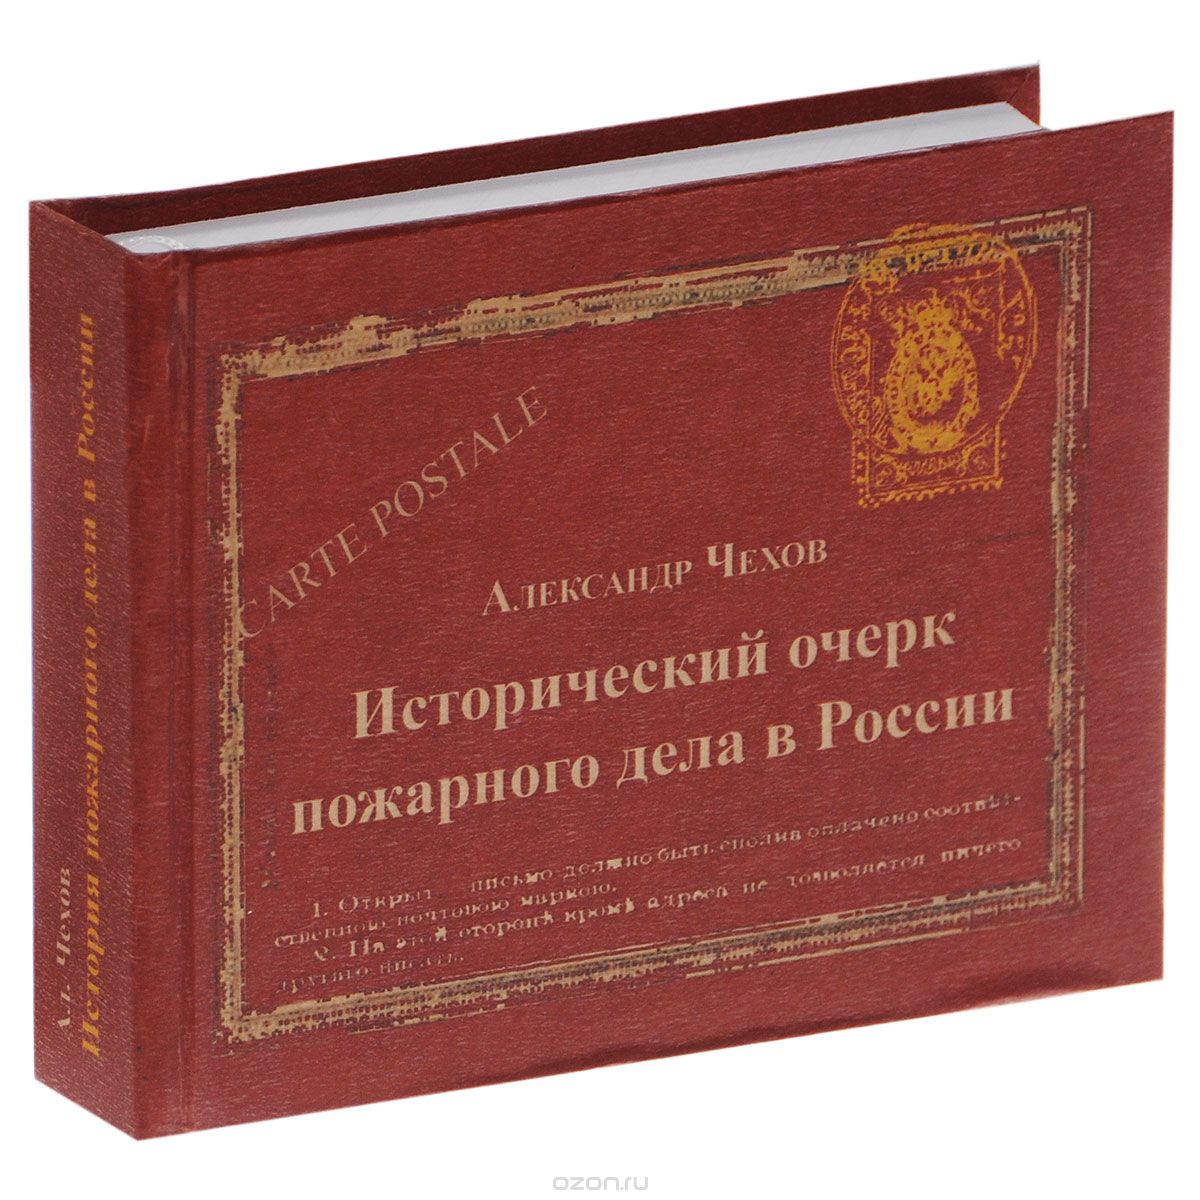 Исторический очерк пожарного дела в России, Александр Чехов